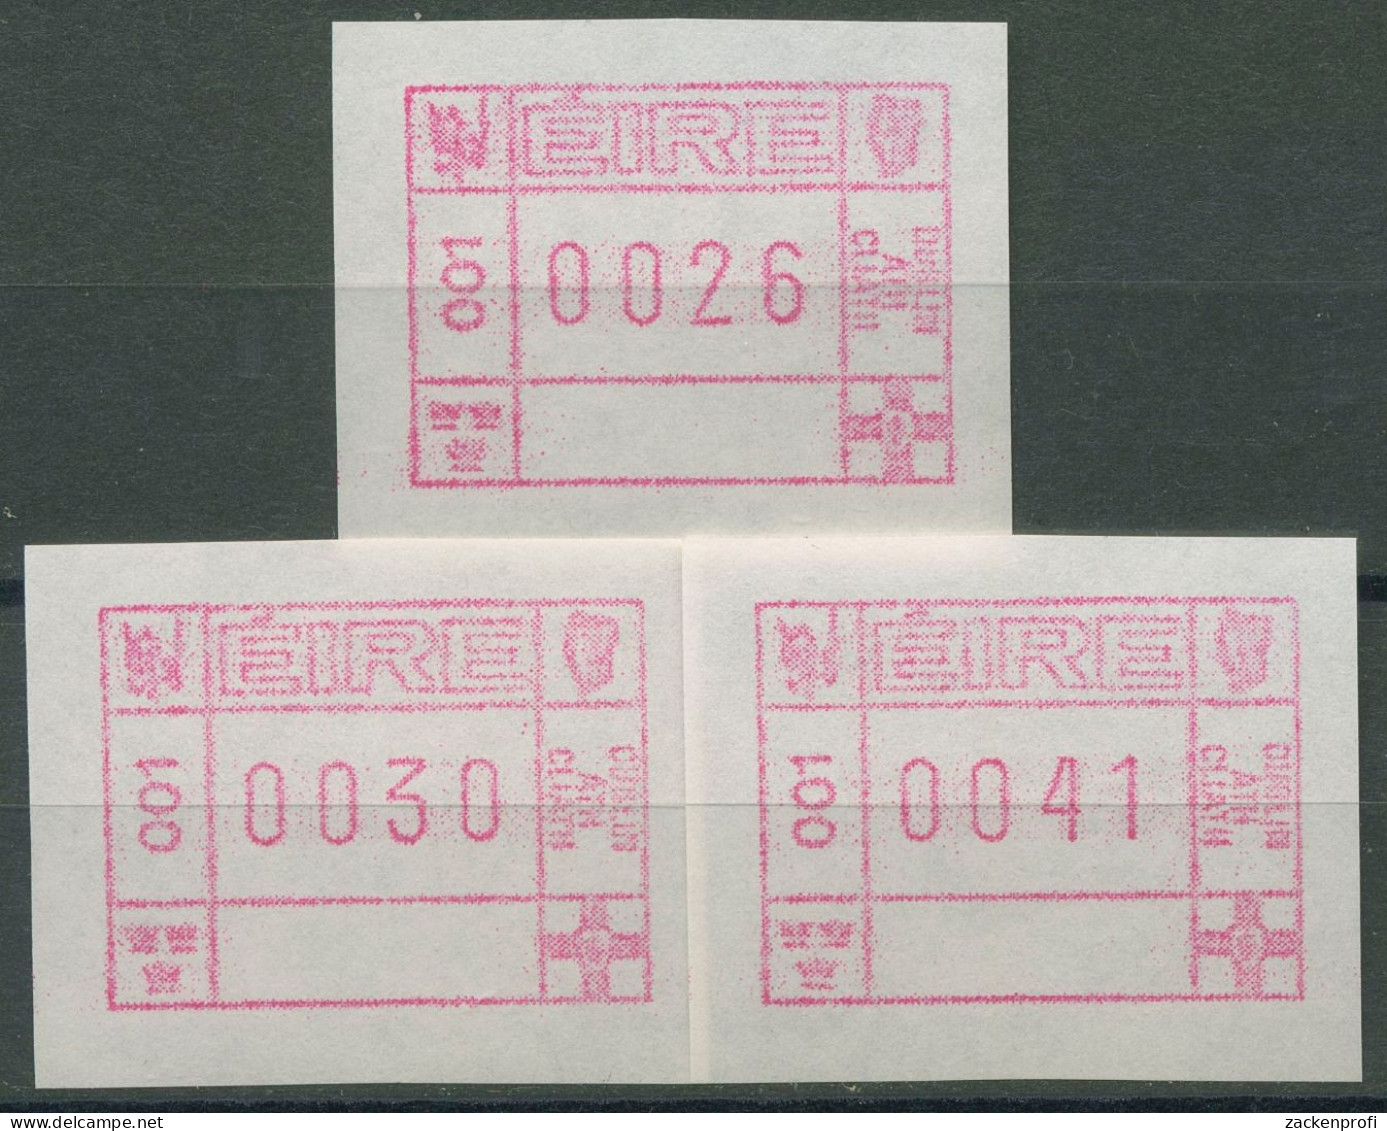 Irland Automatenmarken 1990 Freimarke Versandstellensatz ATM 1 S1 Postfrisch - Franking Labels